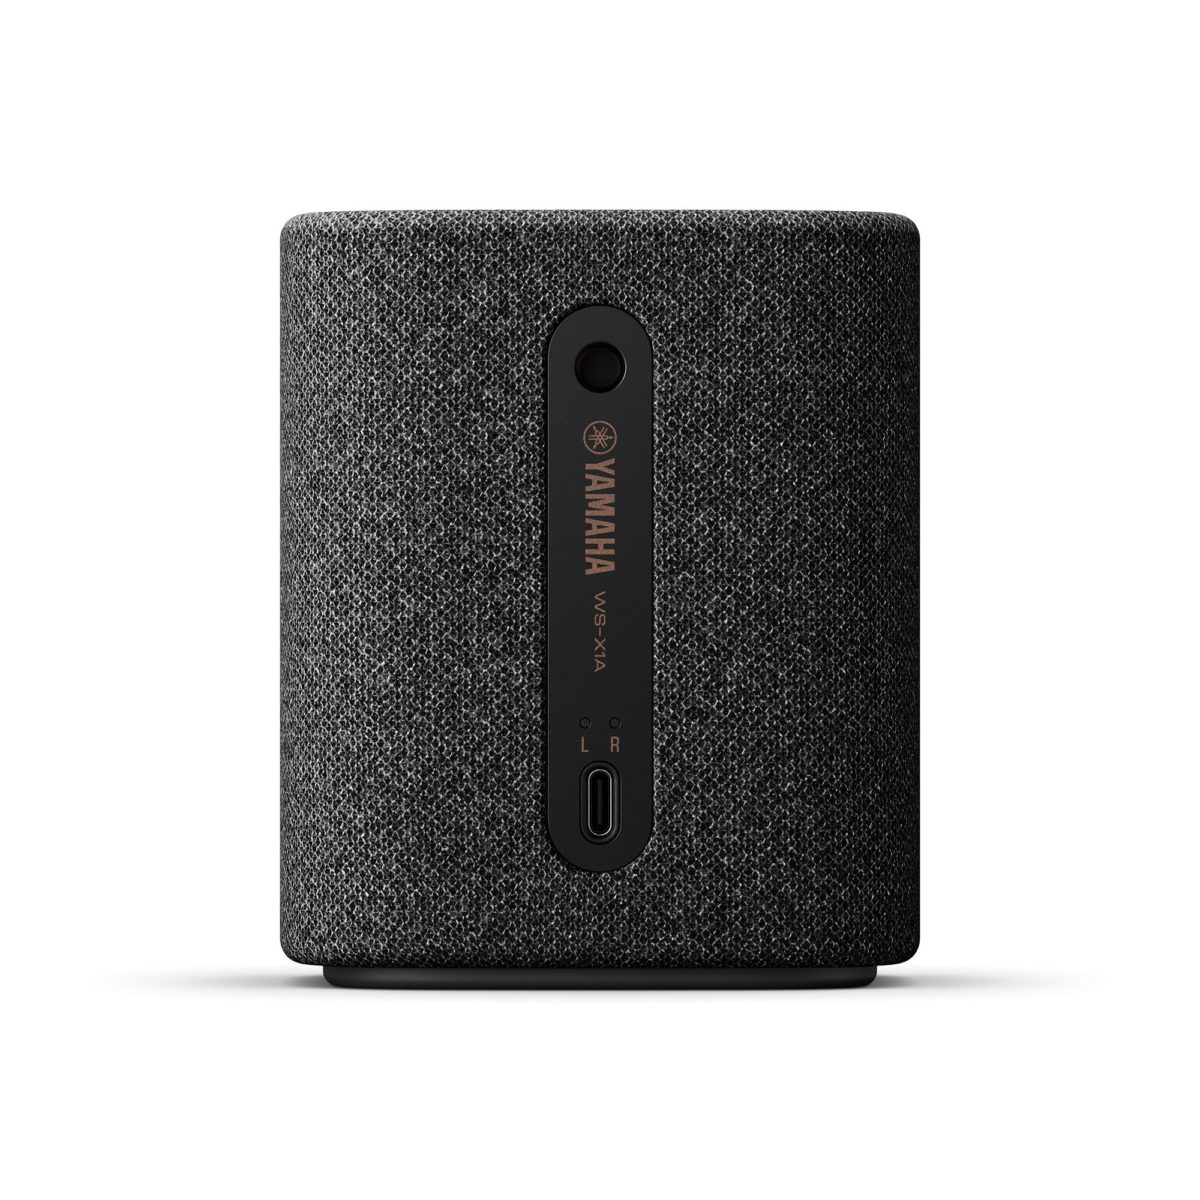 Yamaha True X Speaker 1a, un altavoz inalámbrico portátil de sólo 10 cm con tecnología Clear Voice 7